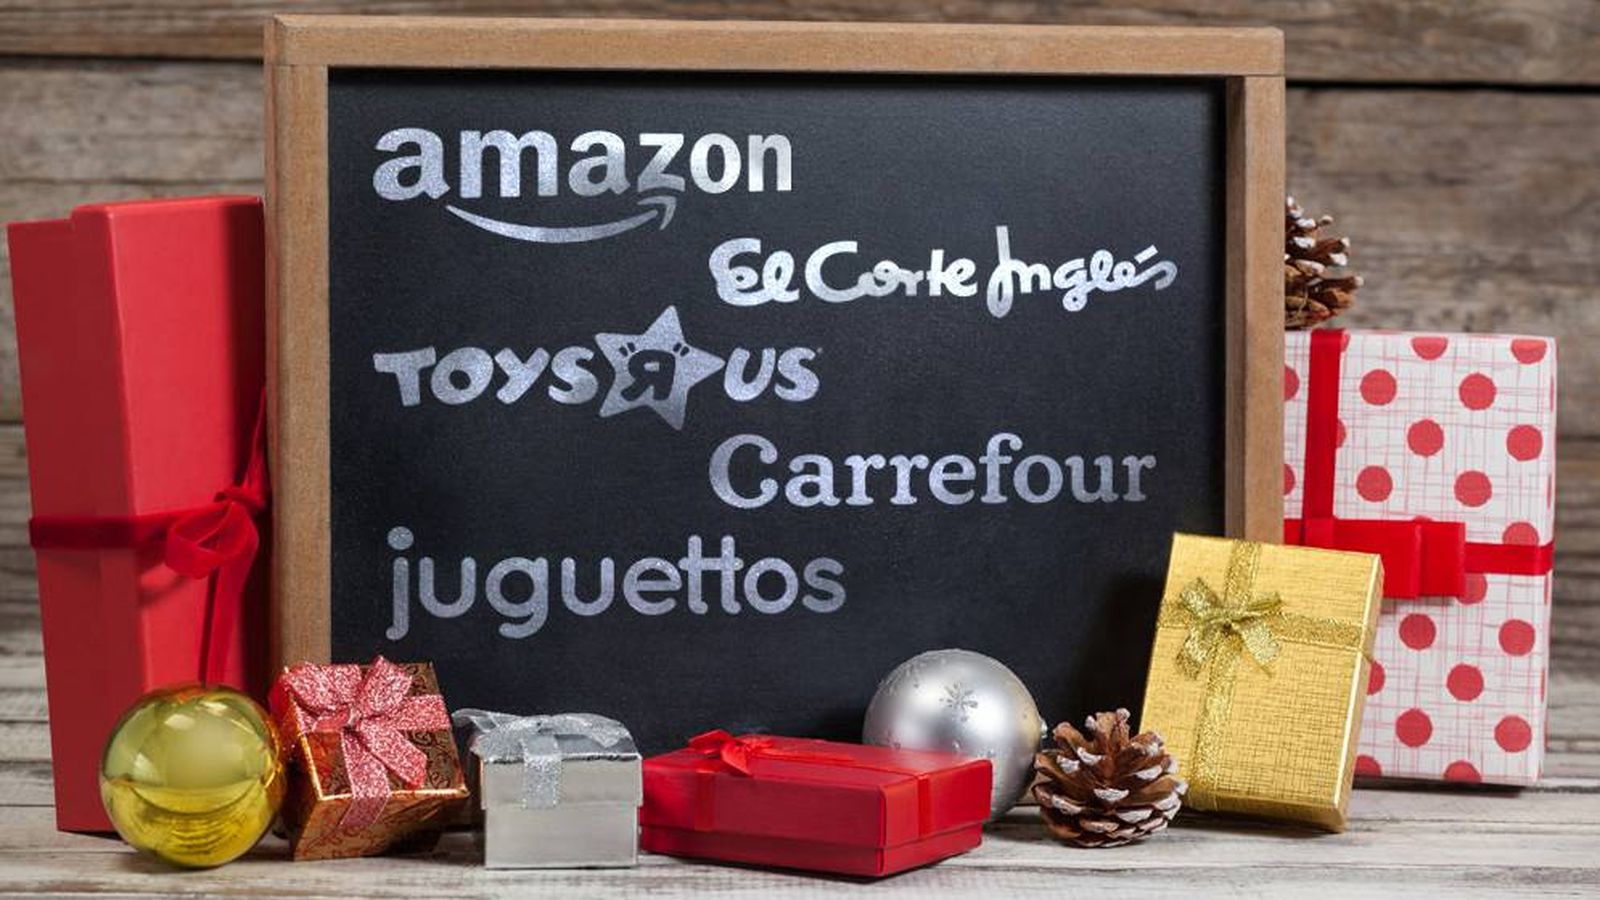 Foto: Comparativa de precios de juguetes: Amazon, El Corte Inglés, Toys 'R' Us y más. (Freepik)